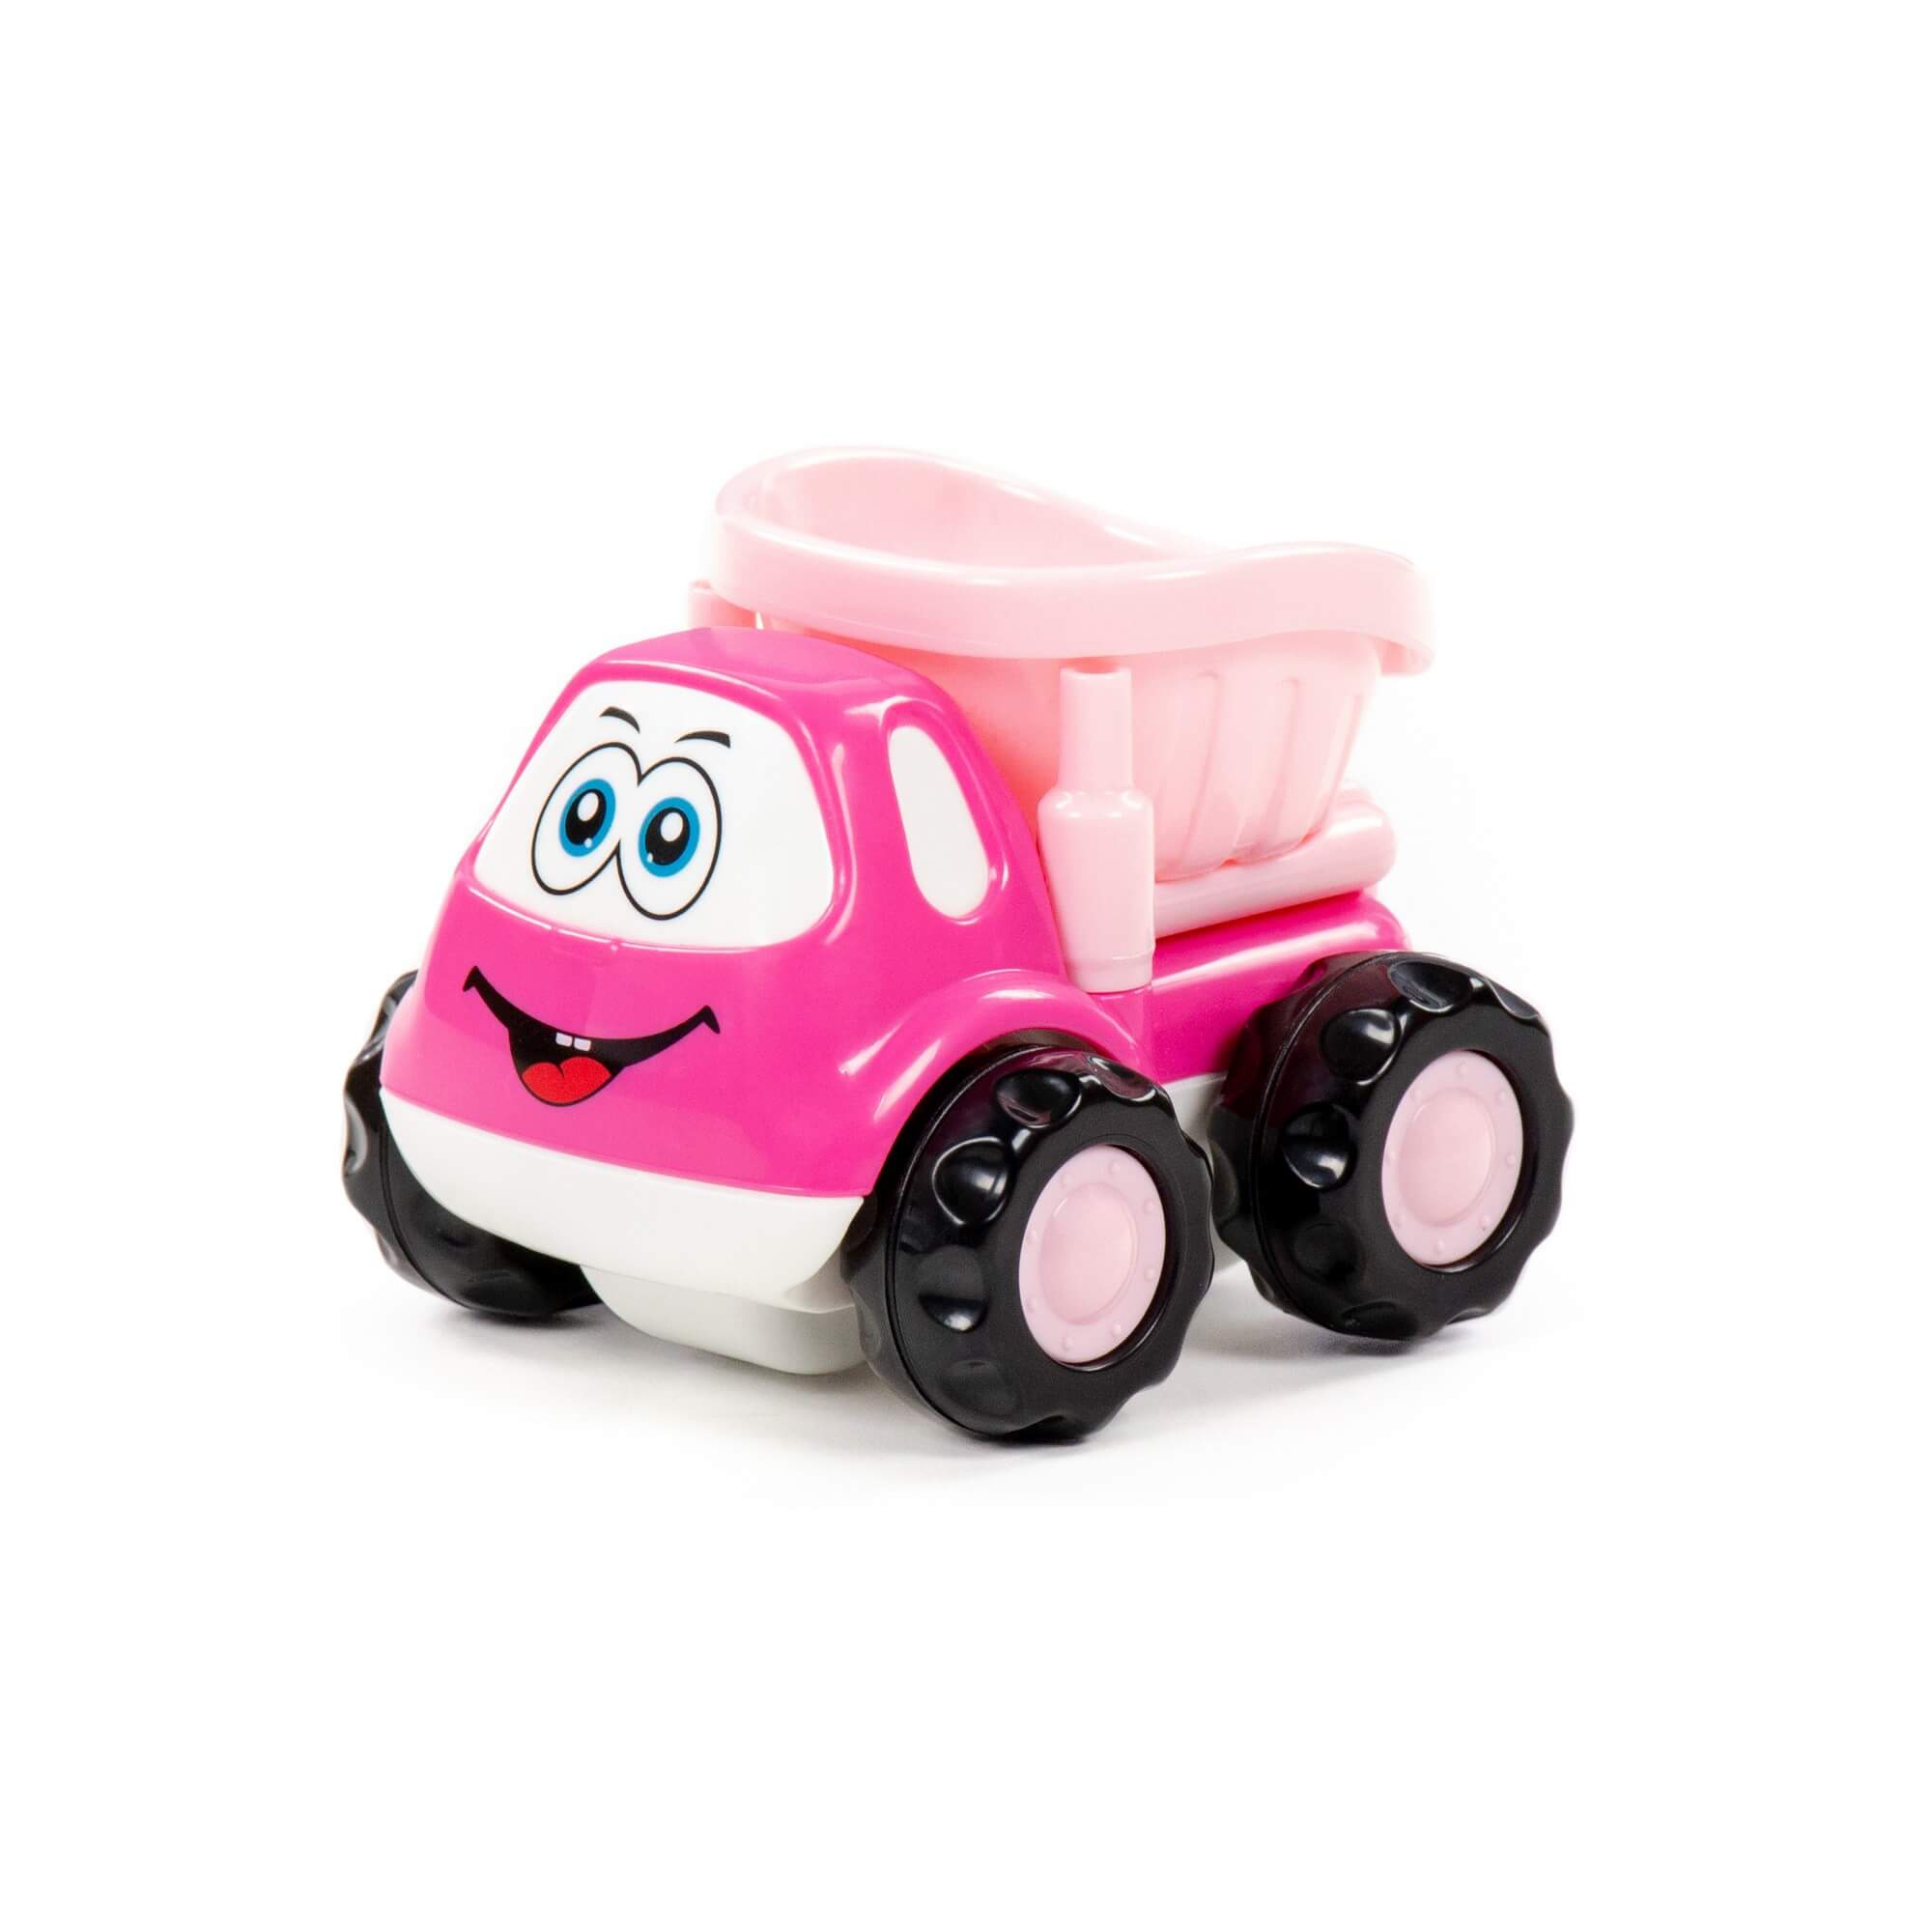 Автомобиль-самосвал Полесье Патрик, инерционный, розовый, в пакете 88789 полесье самосвал оскар инерционный розовый в пакете